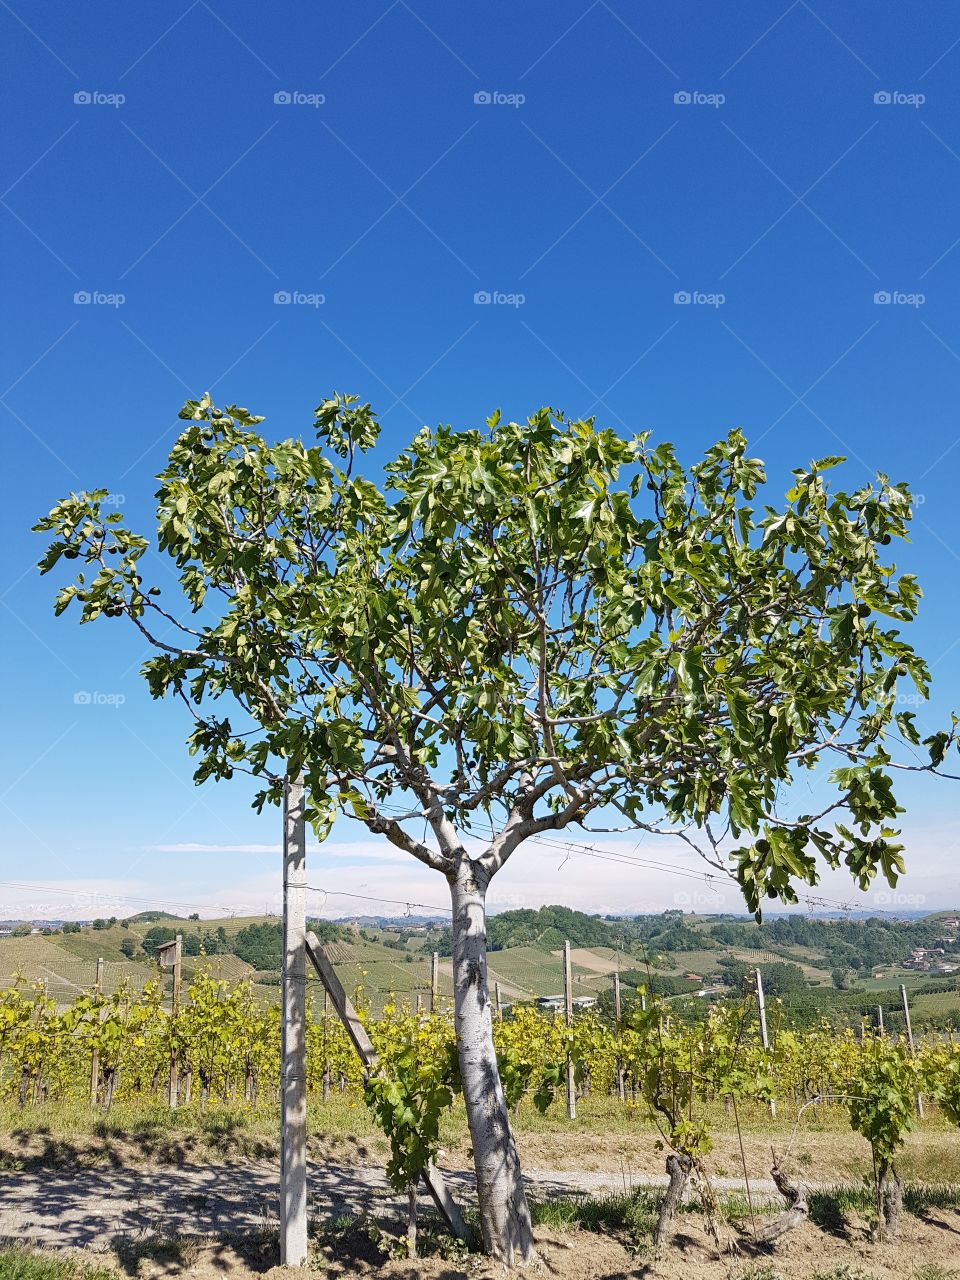 Fig tree in a vineyard